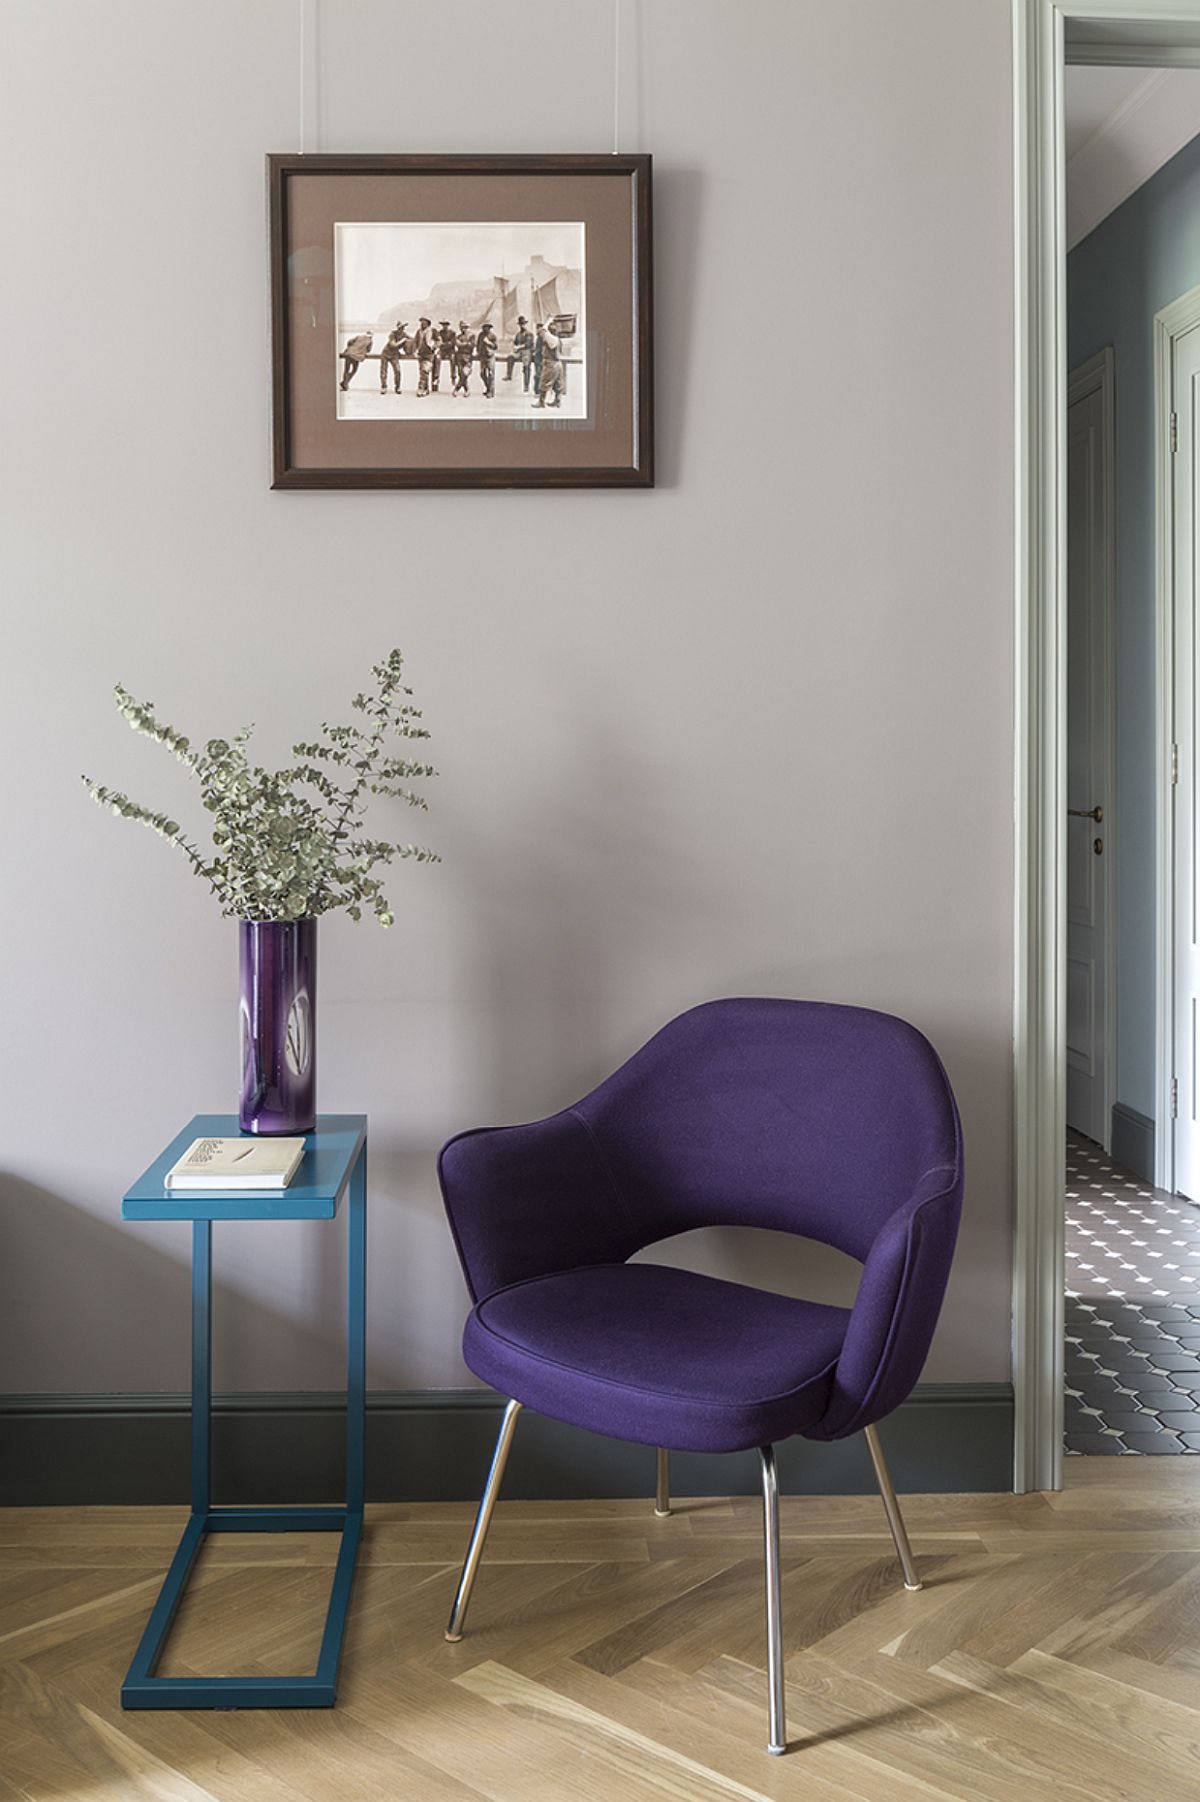 În locul unui fotoliu care să acompanieze canapeaua a fost ales un scaun cu design emblematic, comandat la Knoll cu tapițerie mov. Este vorba despre Executive Arm Chair creat de designerul Eero Saarinen (1950).